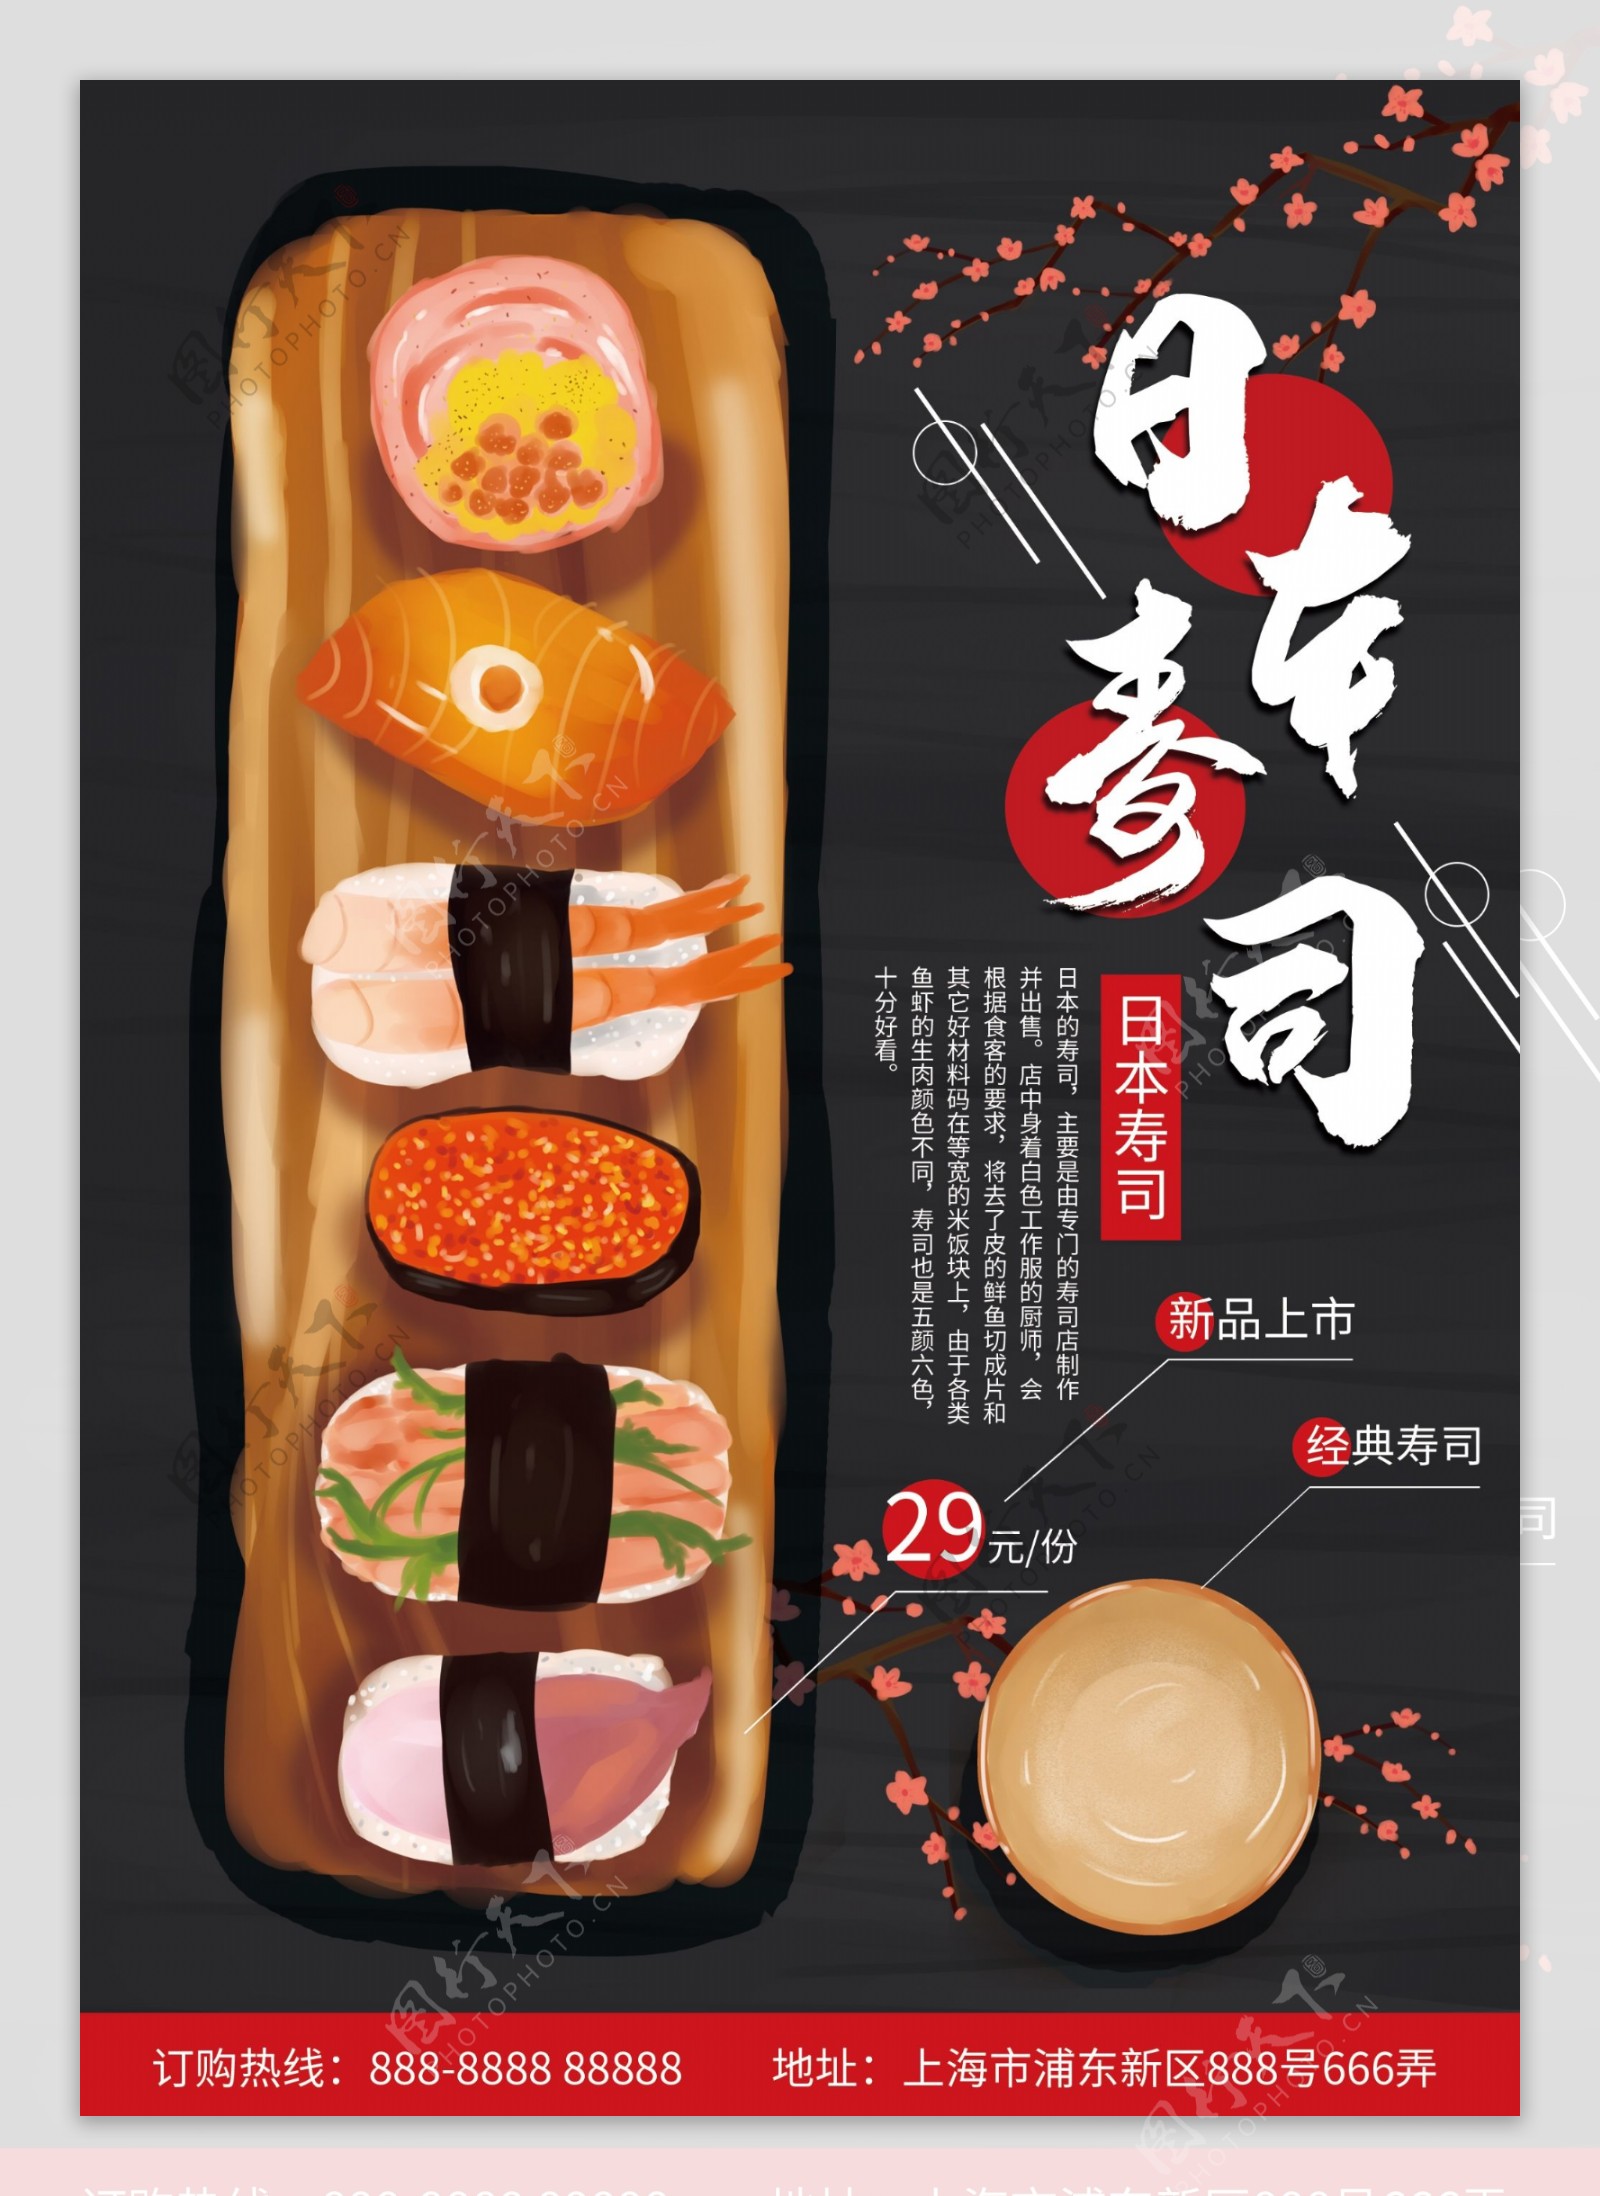 原创手绘日本寿司菜单DM宣传单页